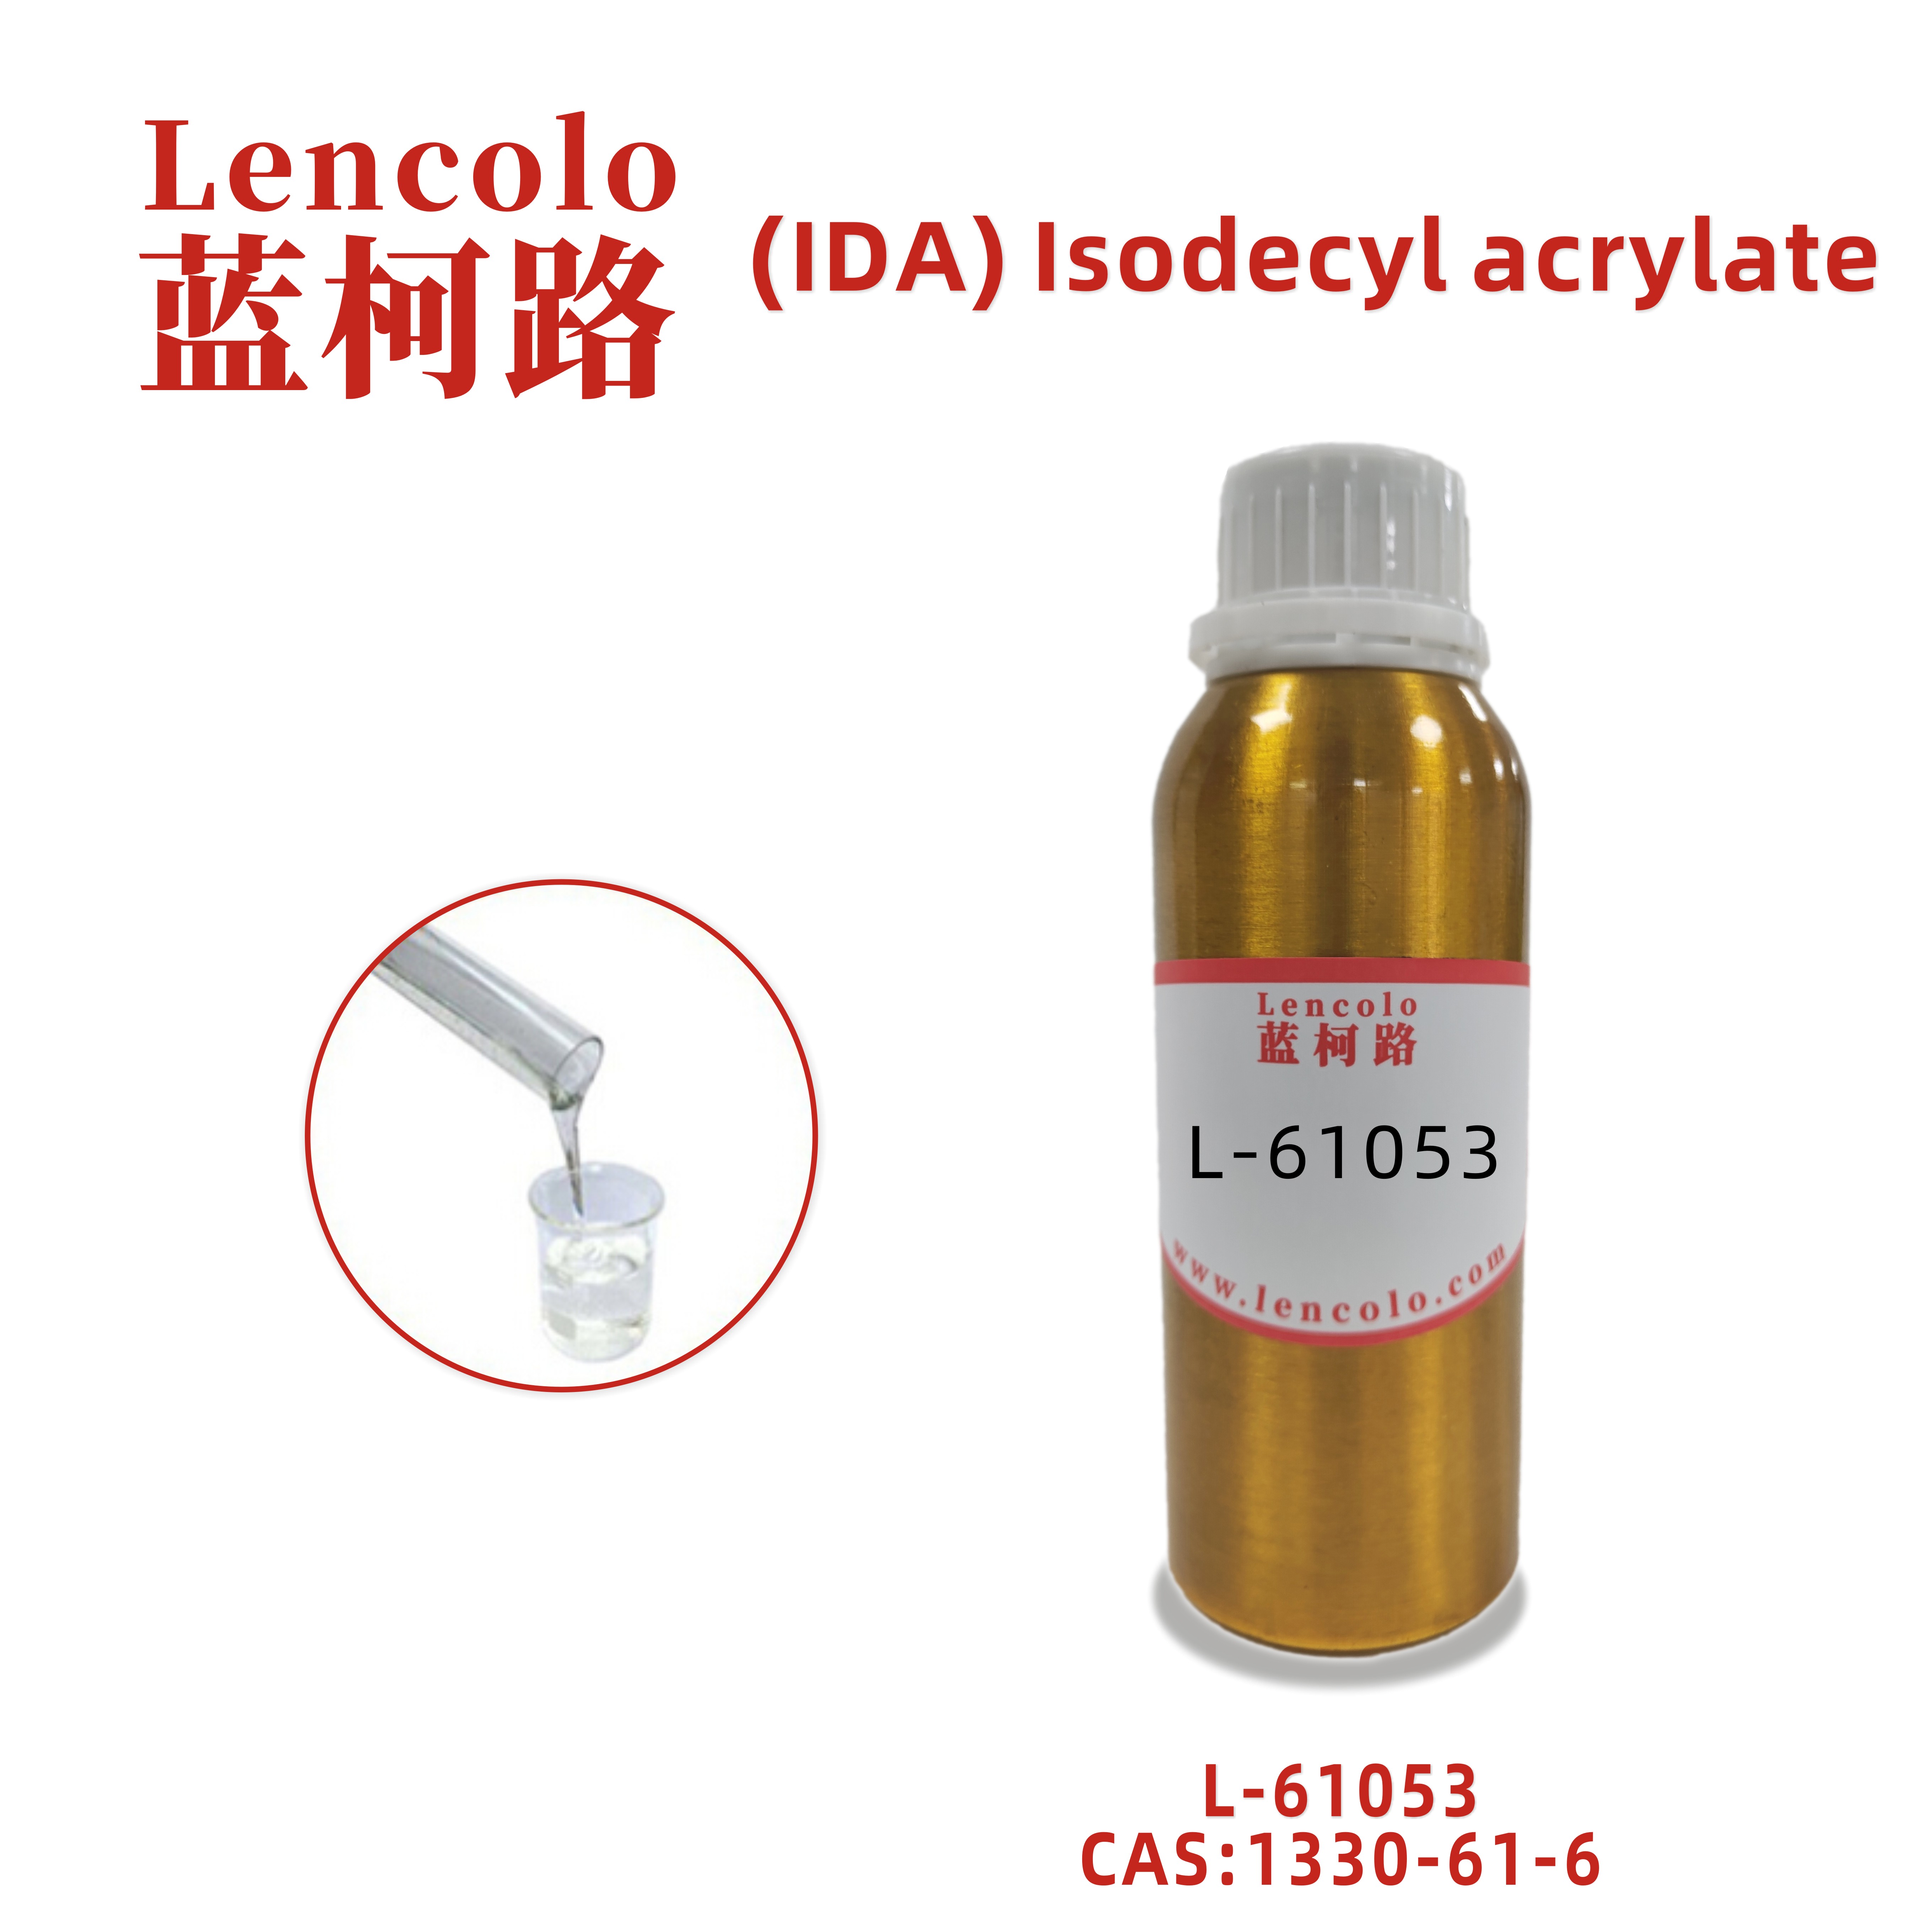 L-61053 (IDA) Isodecyl acrylate UV monomer for UV adhesive UV inkjet CAS 1330-61-6